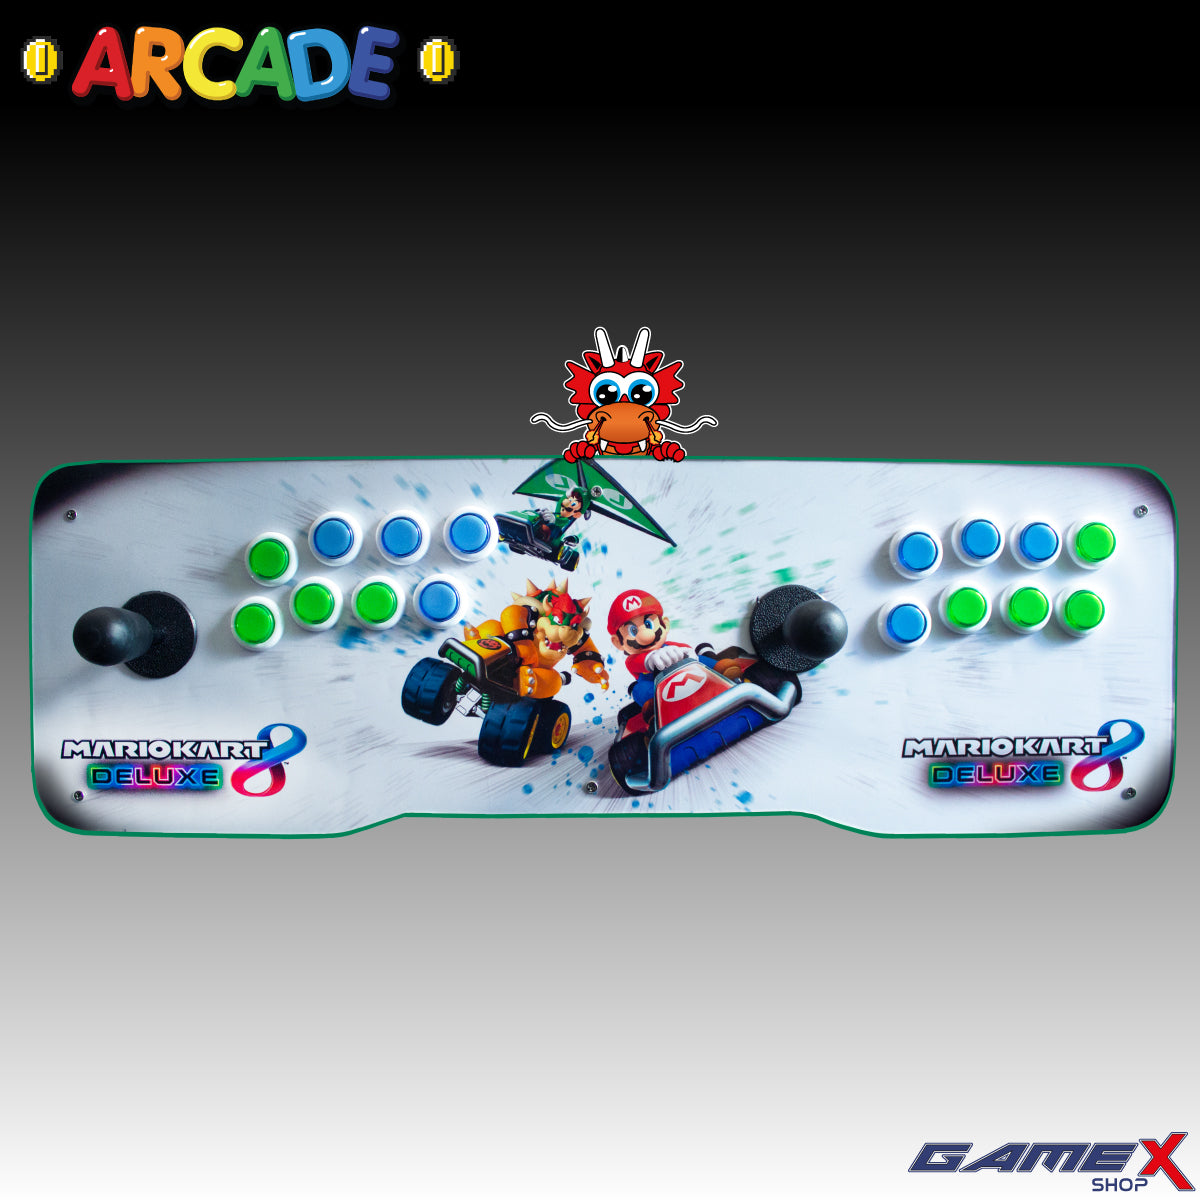 Tablero Arcade Doble 2 jugadores PC Con Mini Consola 48 MIL JUEGOS GameX Shop